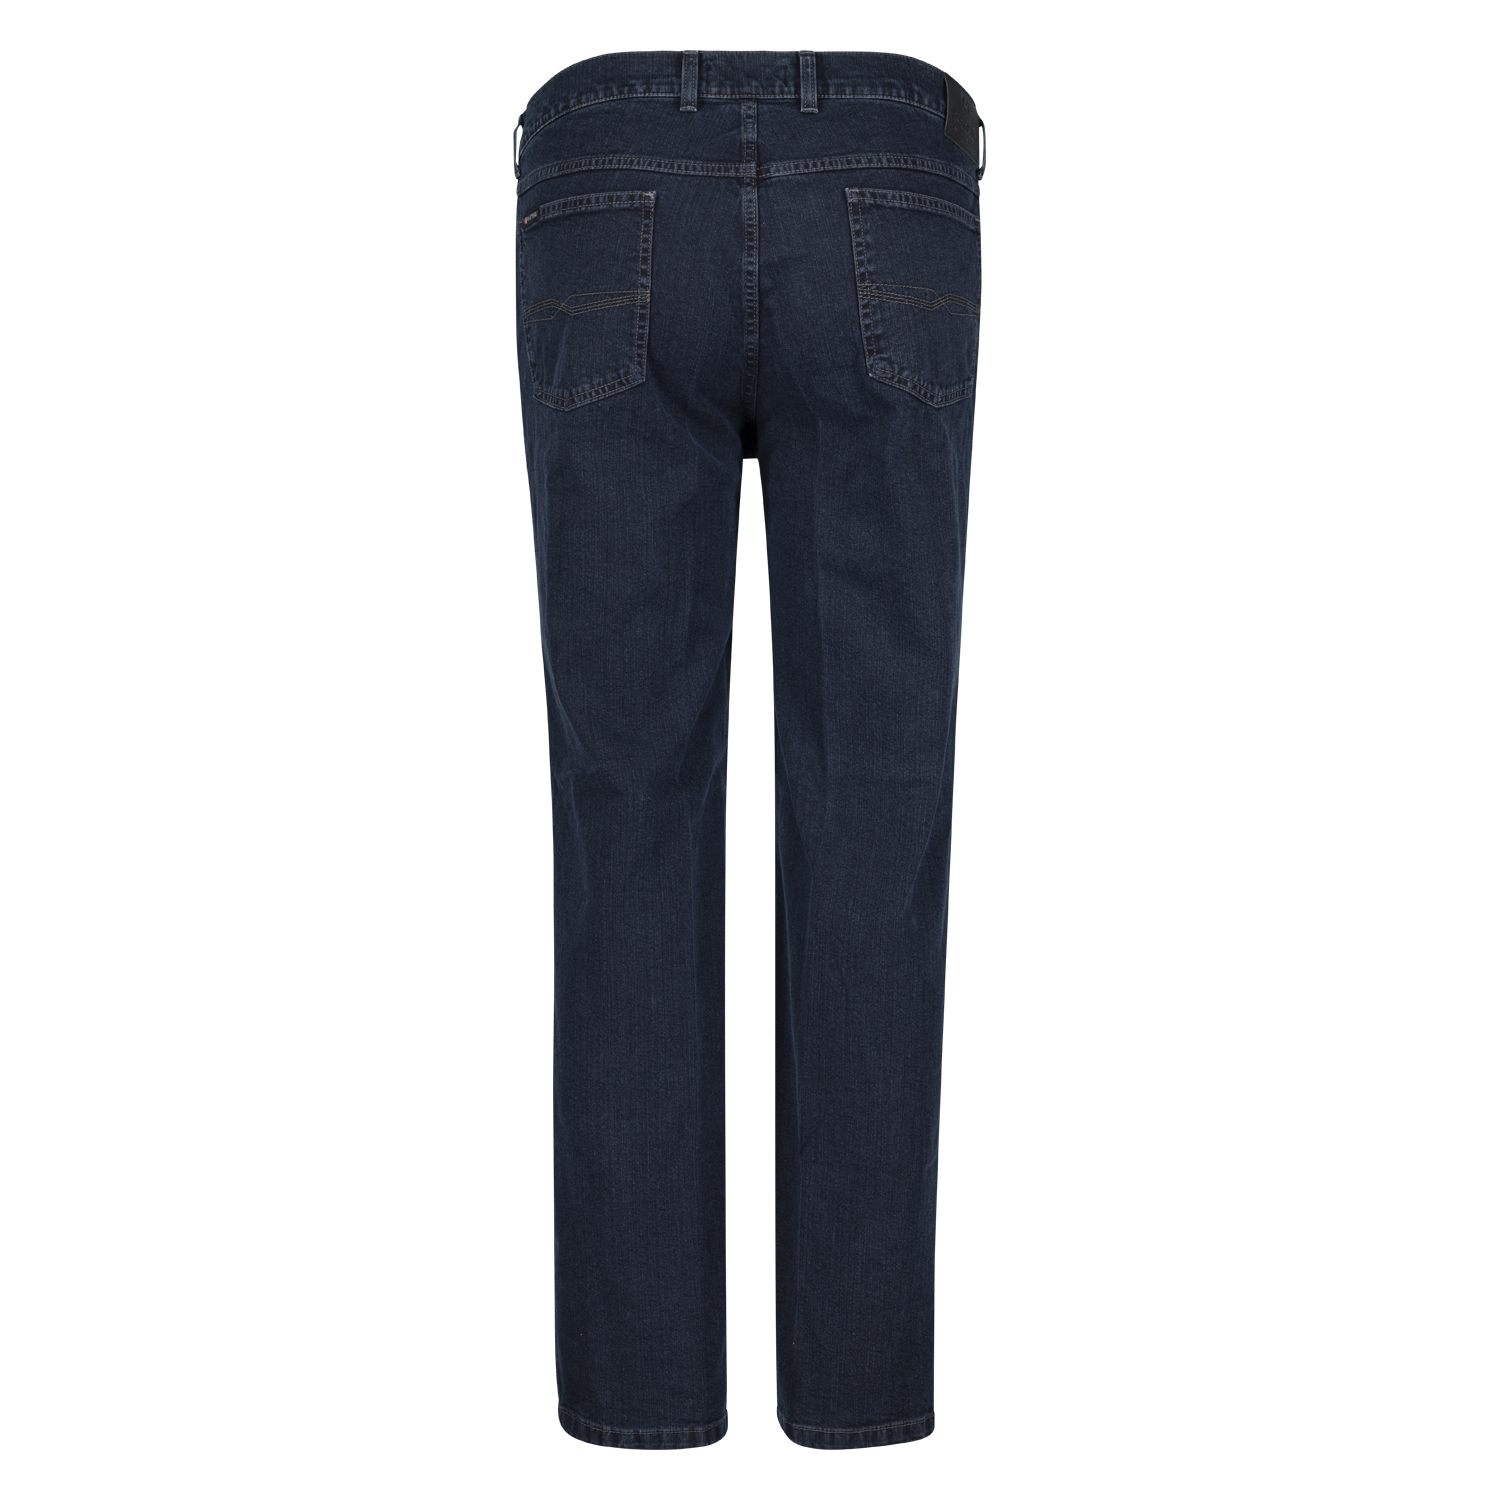 Pioneer Five Pocket Jeans Modell "Peter" in Bauchgrößen 59 - 85 dark blue stonewash